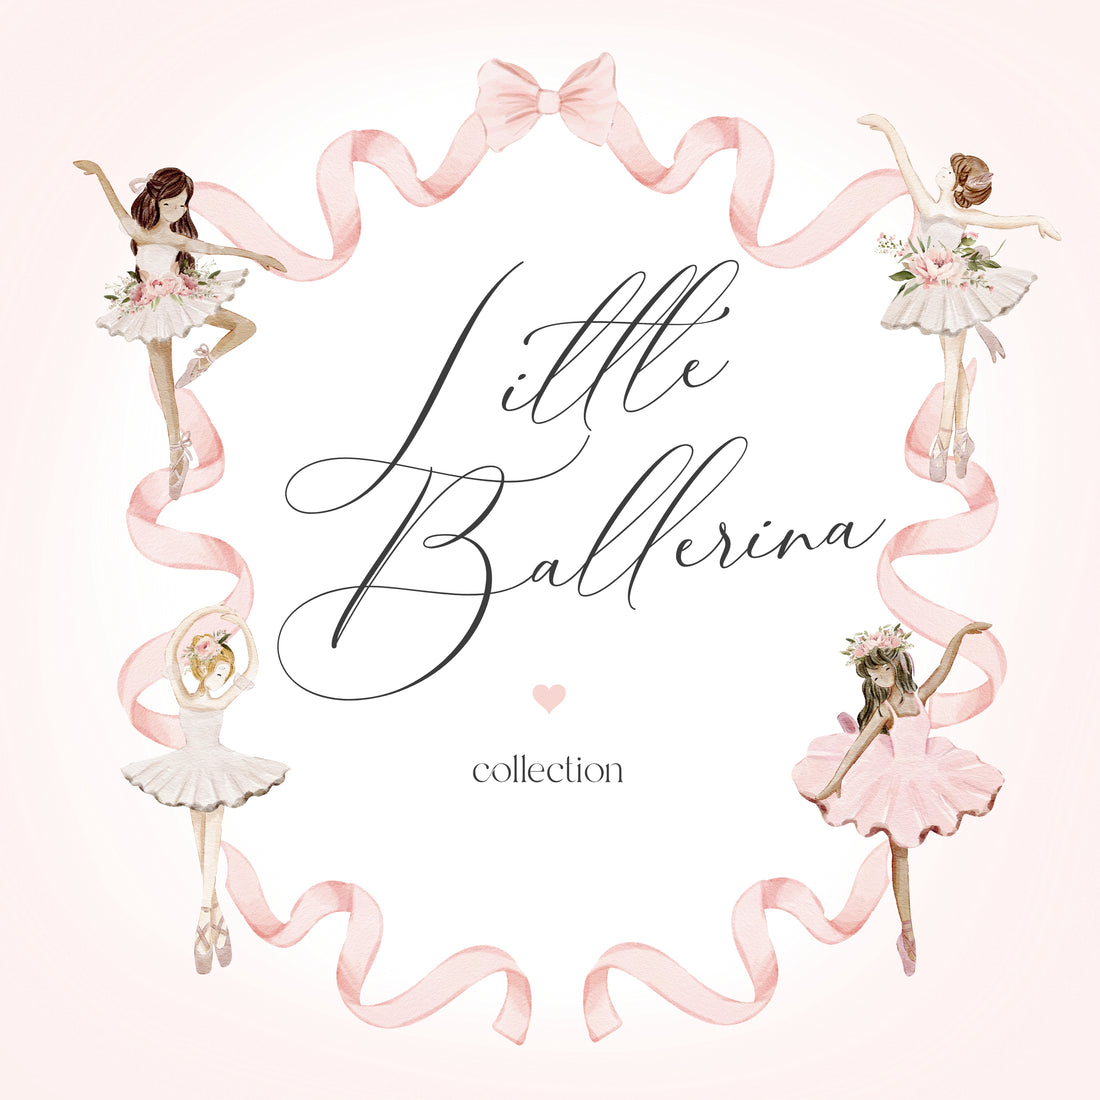  Little Ballerina